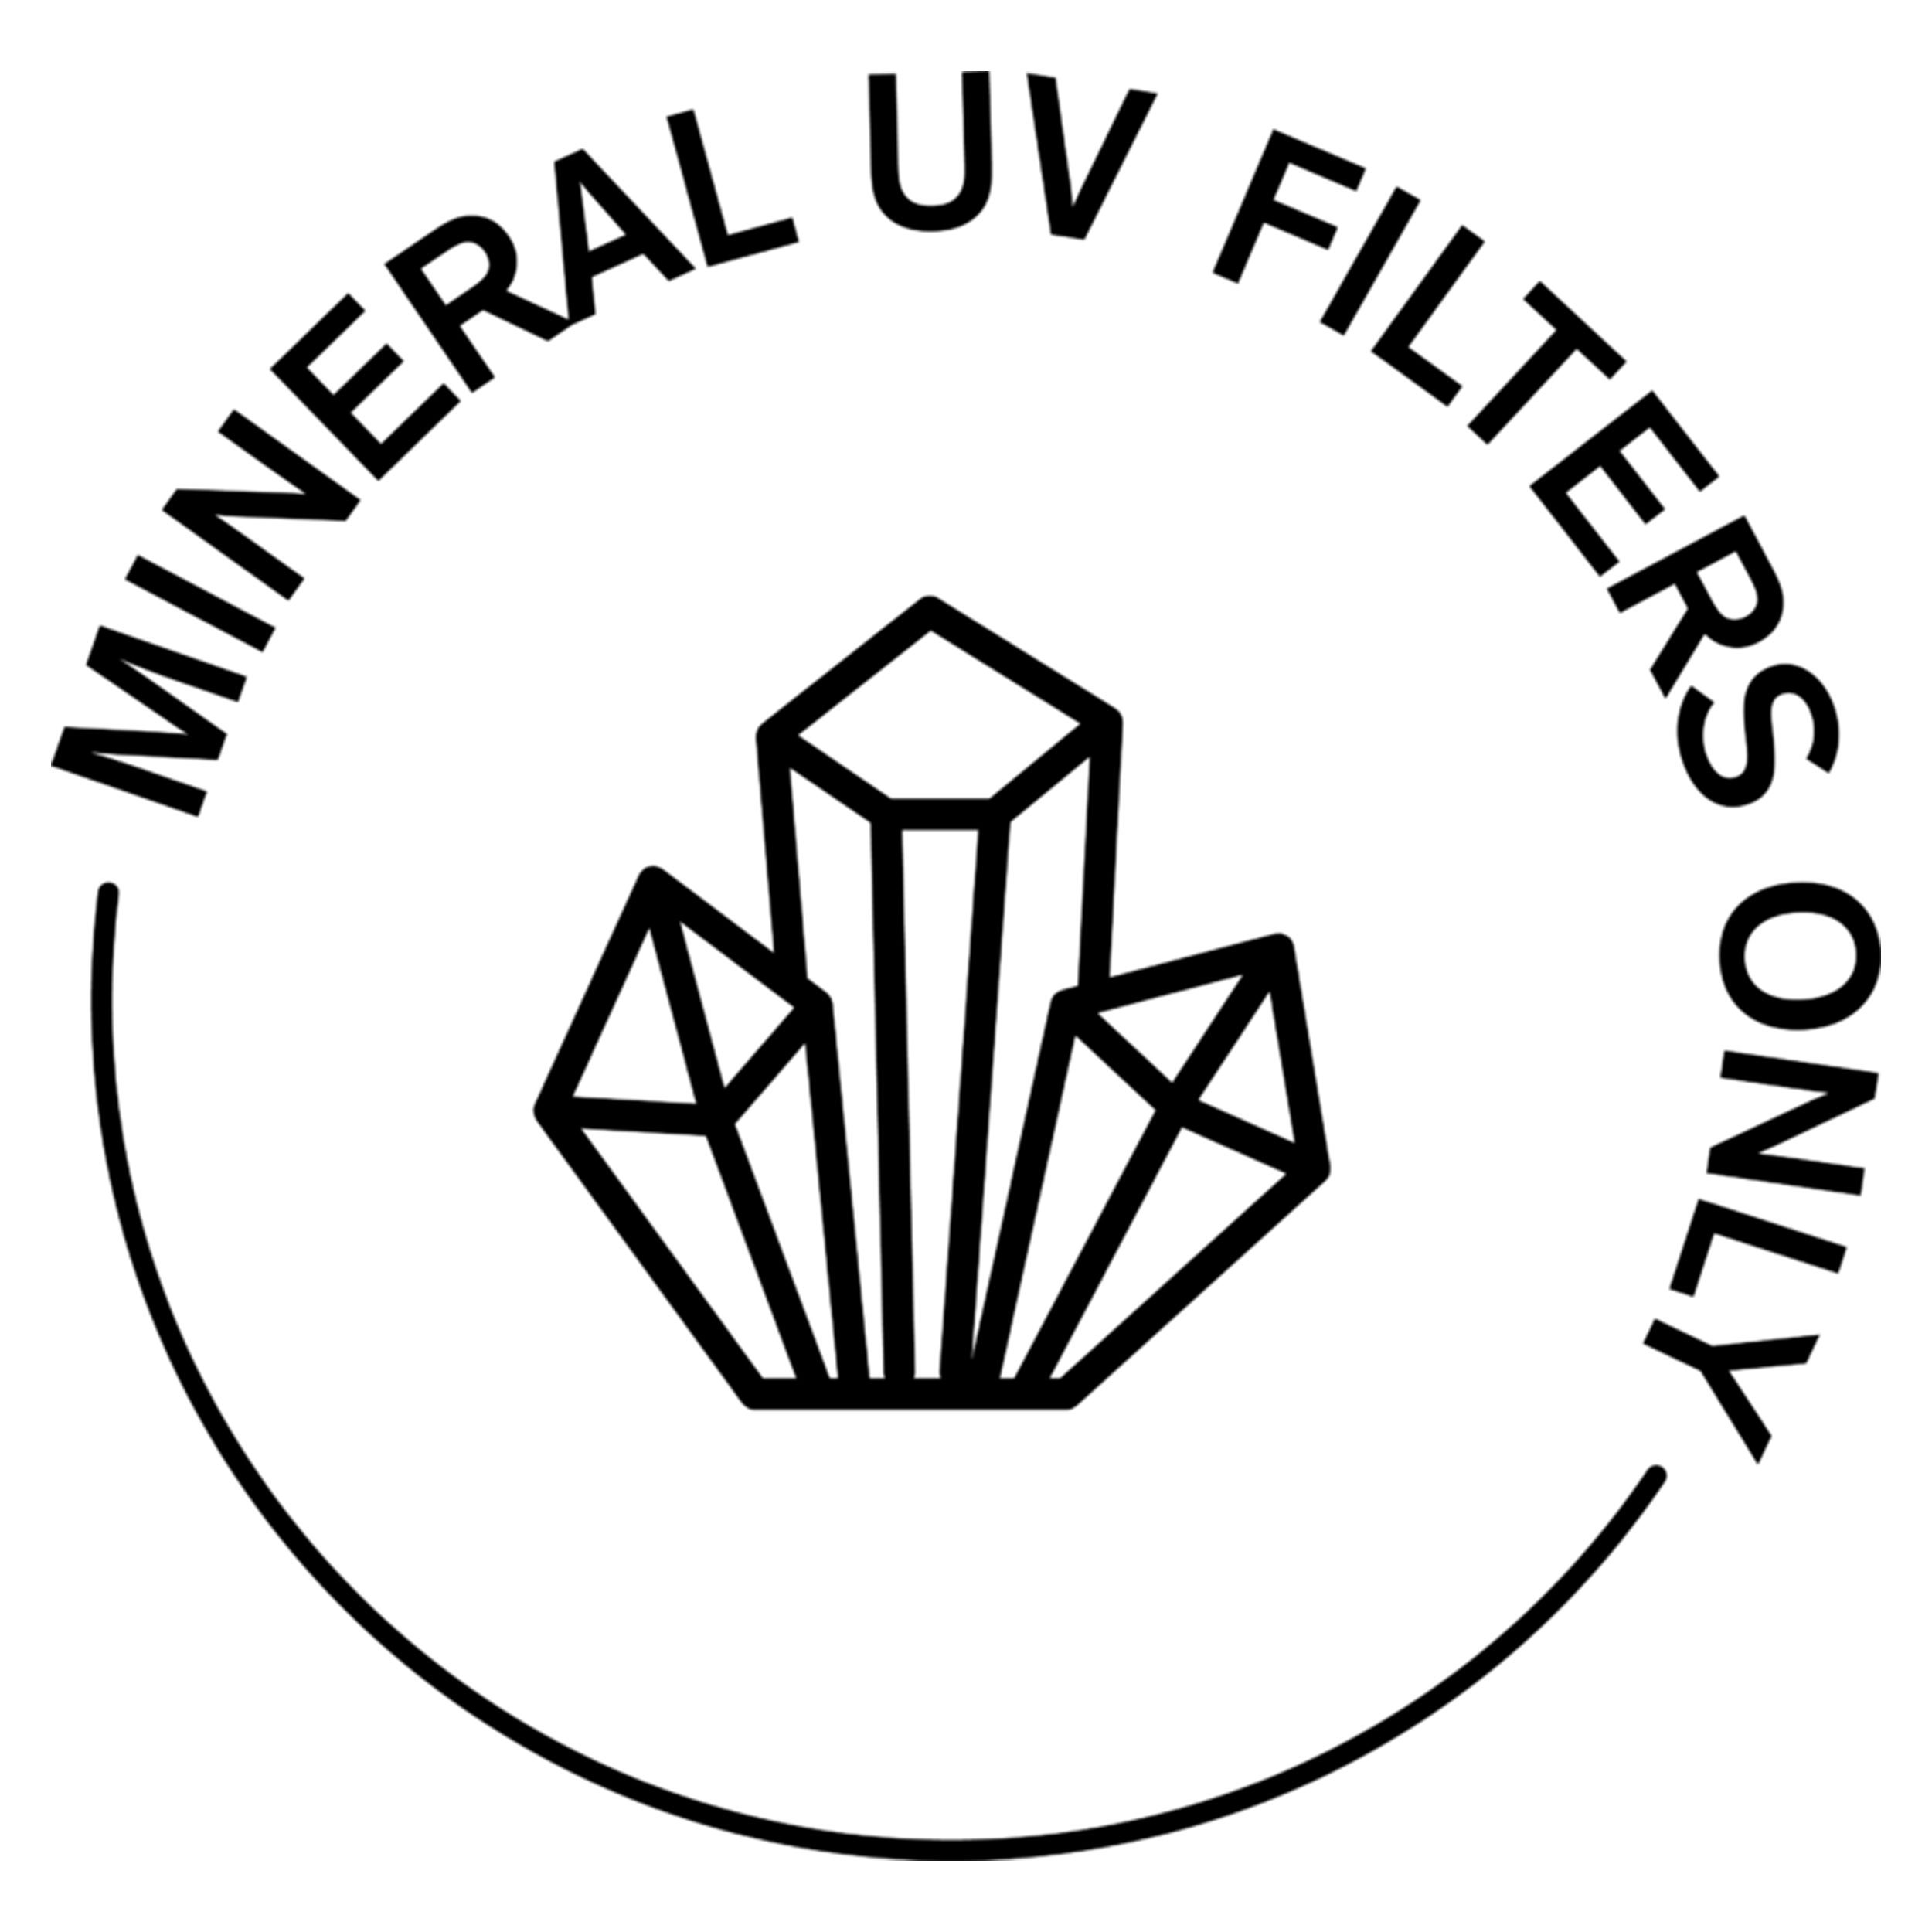 Mineral-UV-Filters.jpg